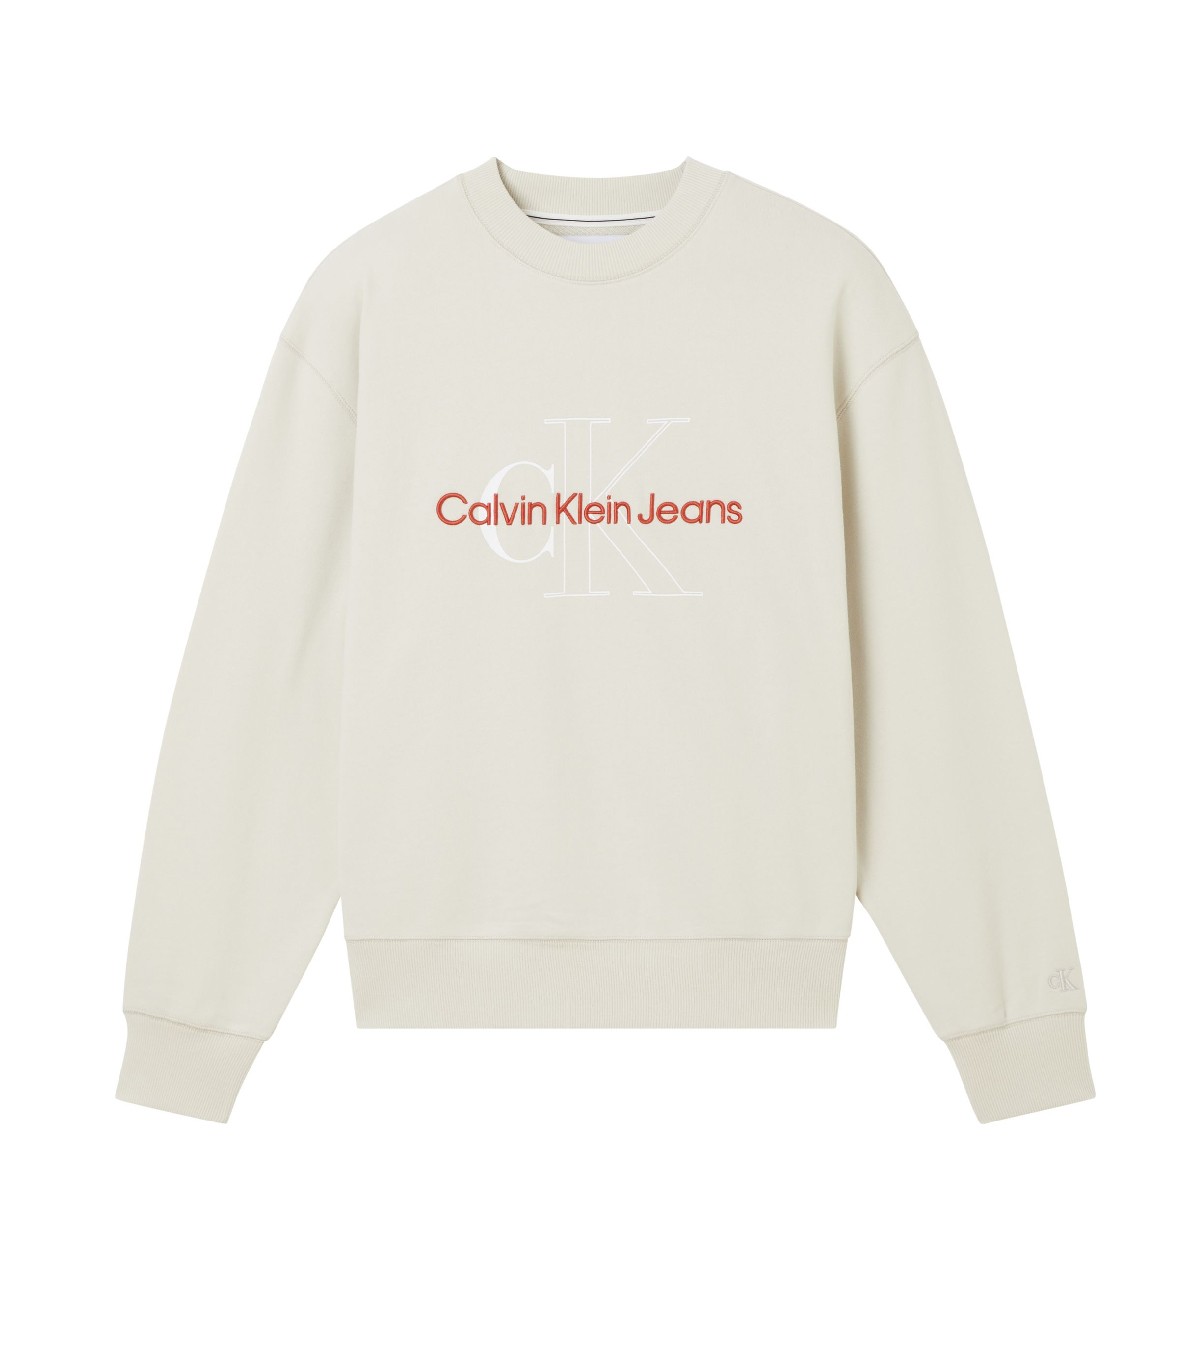 Calvin Klein Jeans - Sudadera Two Tone Monogram - Blanco